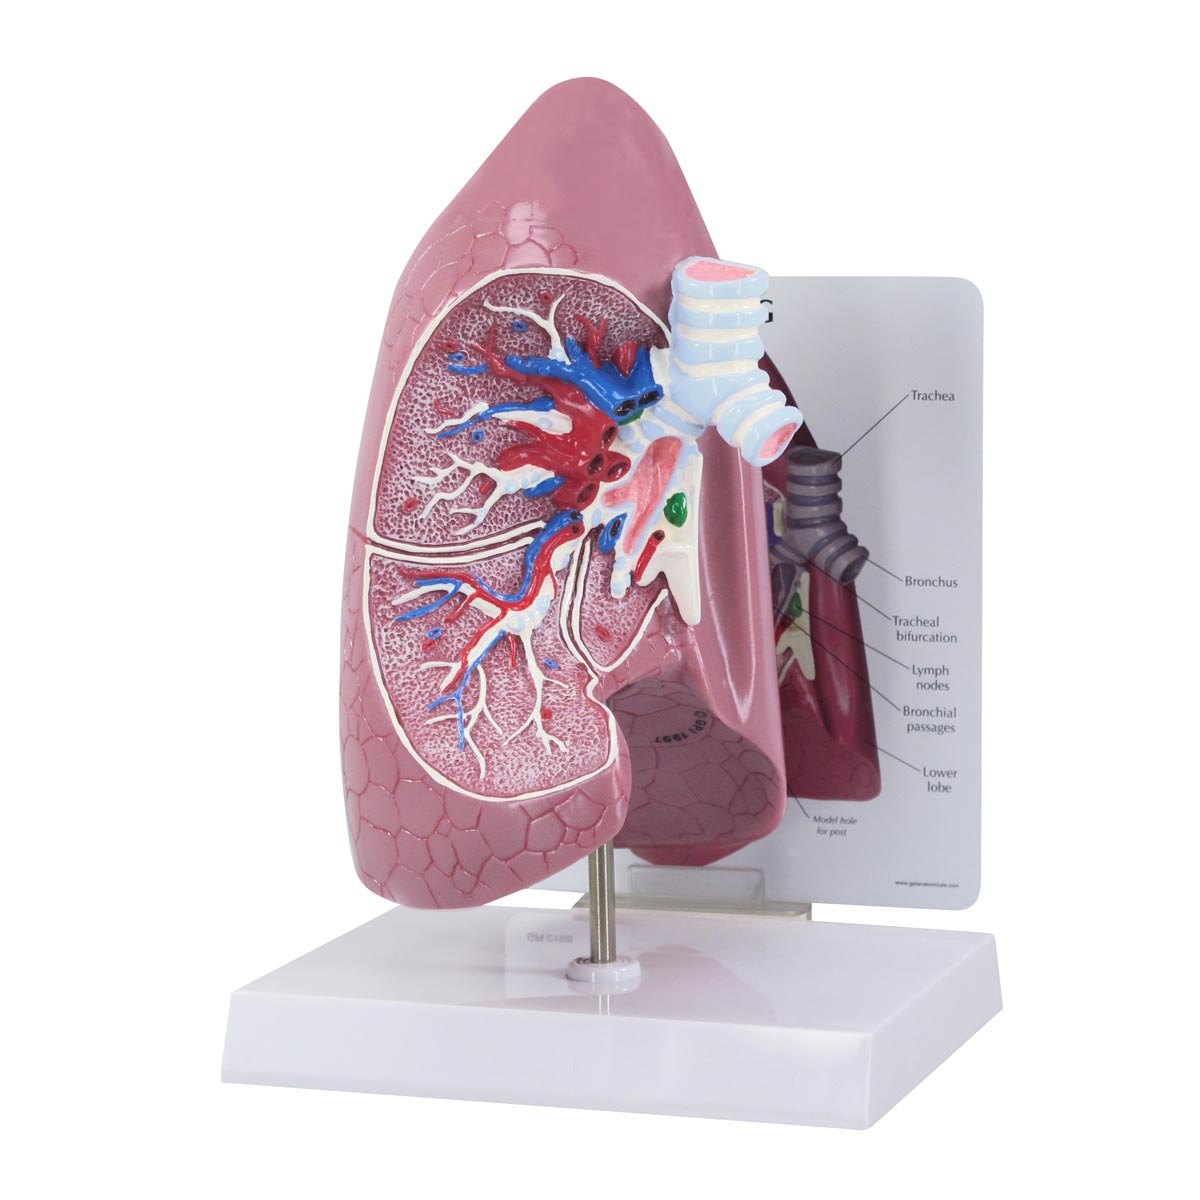 Lungenmodell, Bestellnummer 1019545, 3100, GPI Anatomicals